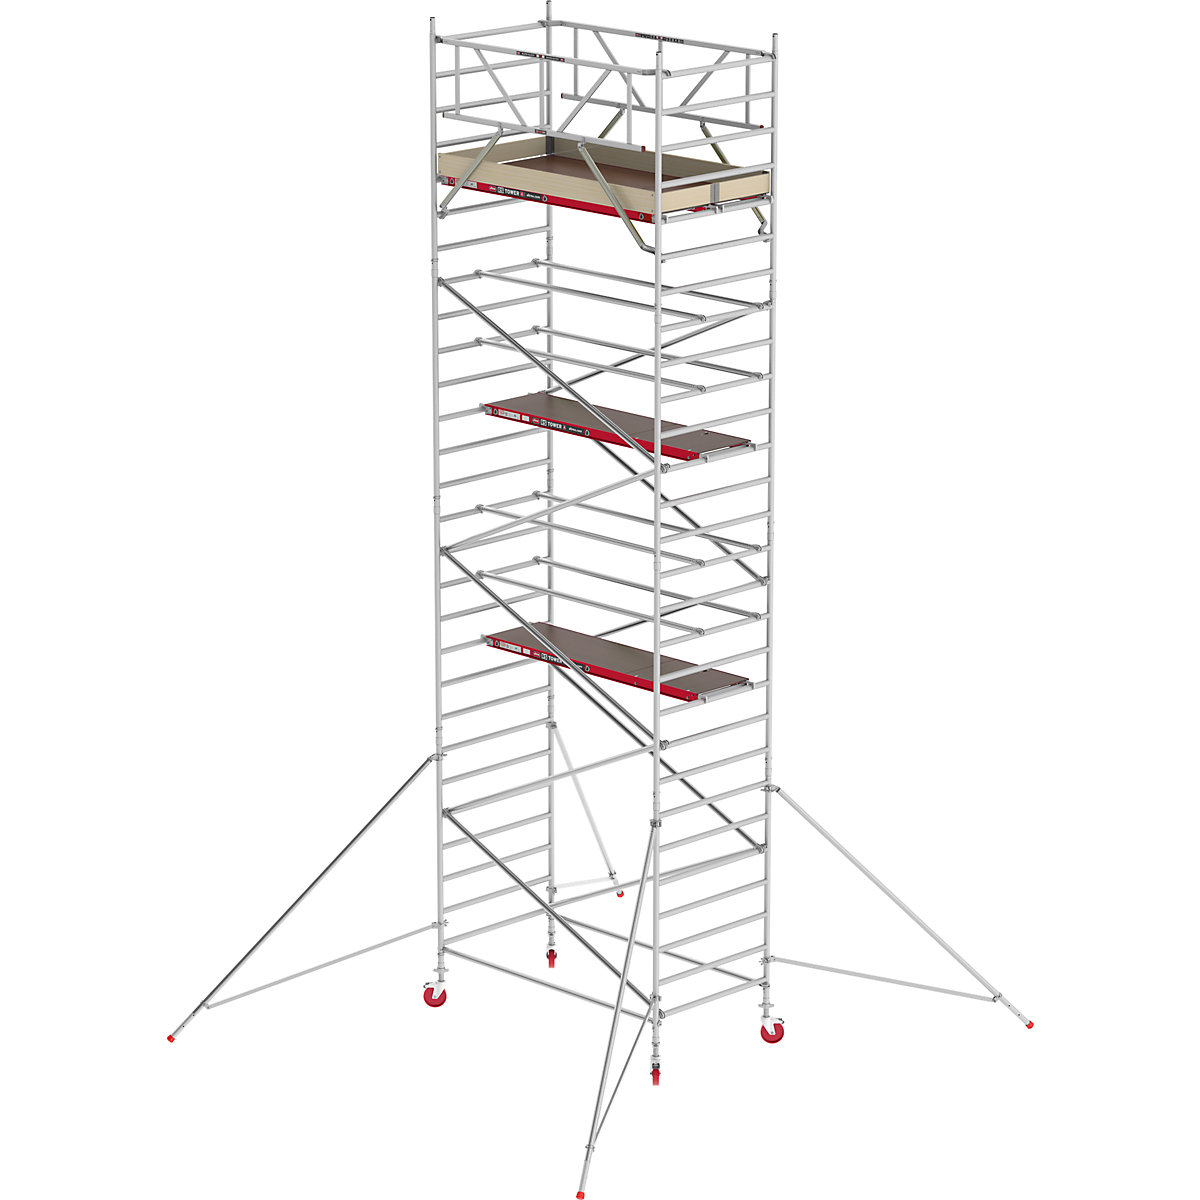 Pomičen oder RS TOWER 42, širok – Altrex, lesena ploščad, dolžina 2,45 m, delovna višina 9,20 m